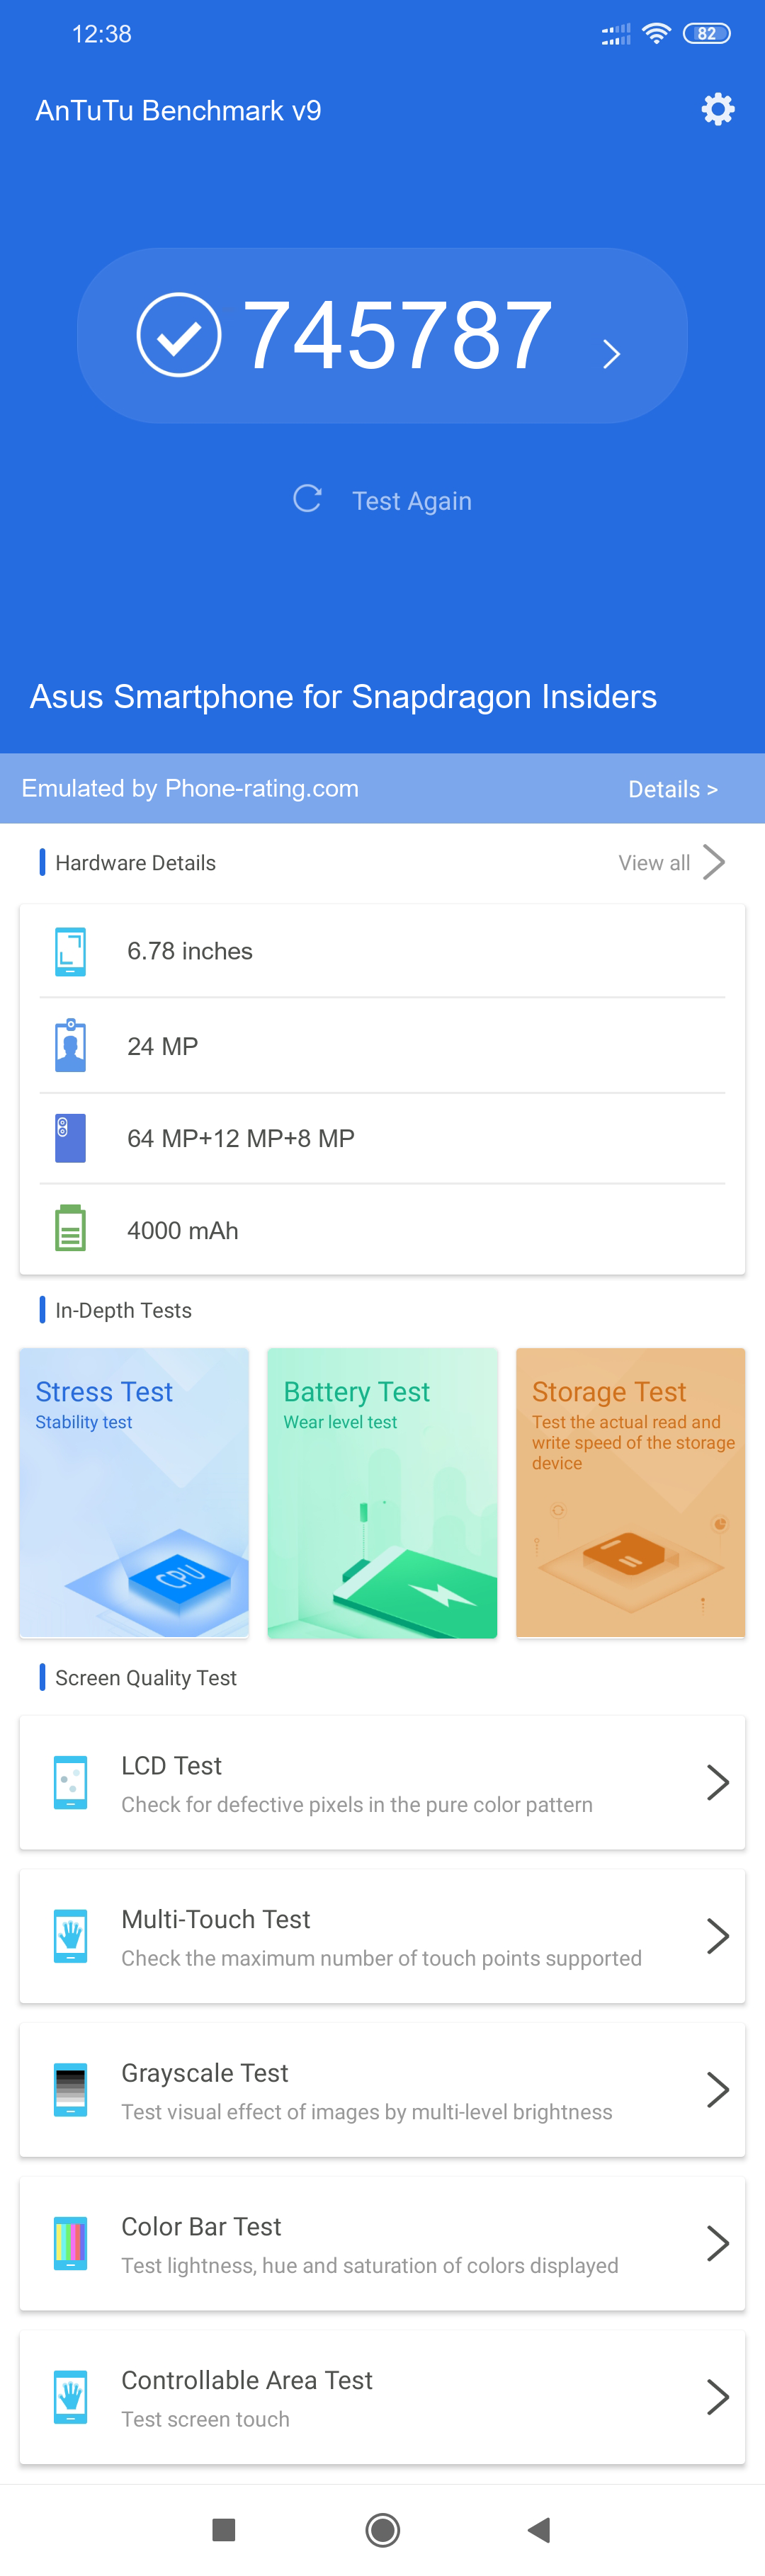 Asus Smartphone for Snapdragon Insiders Antutu v9